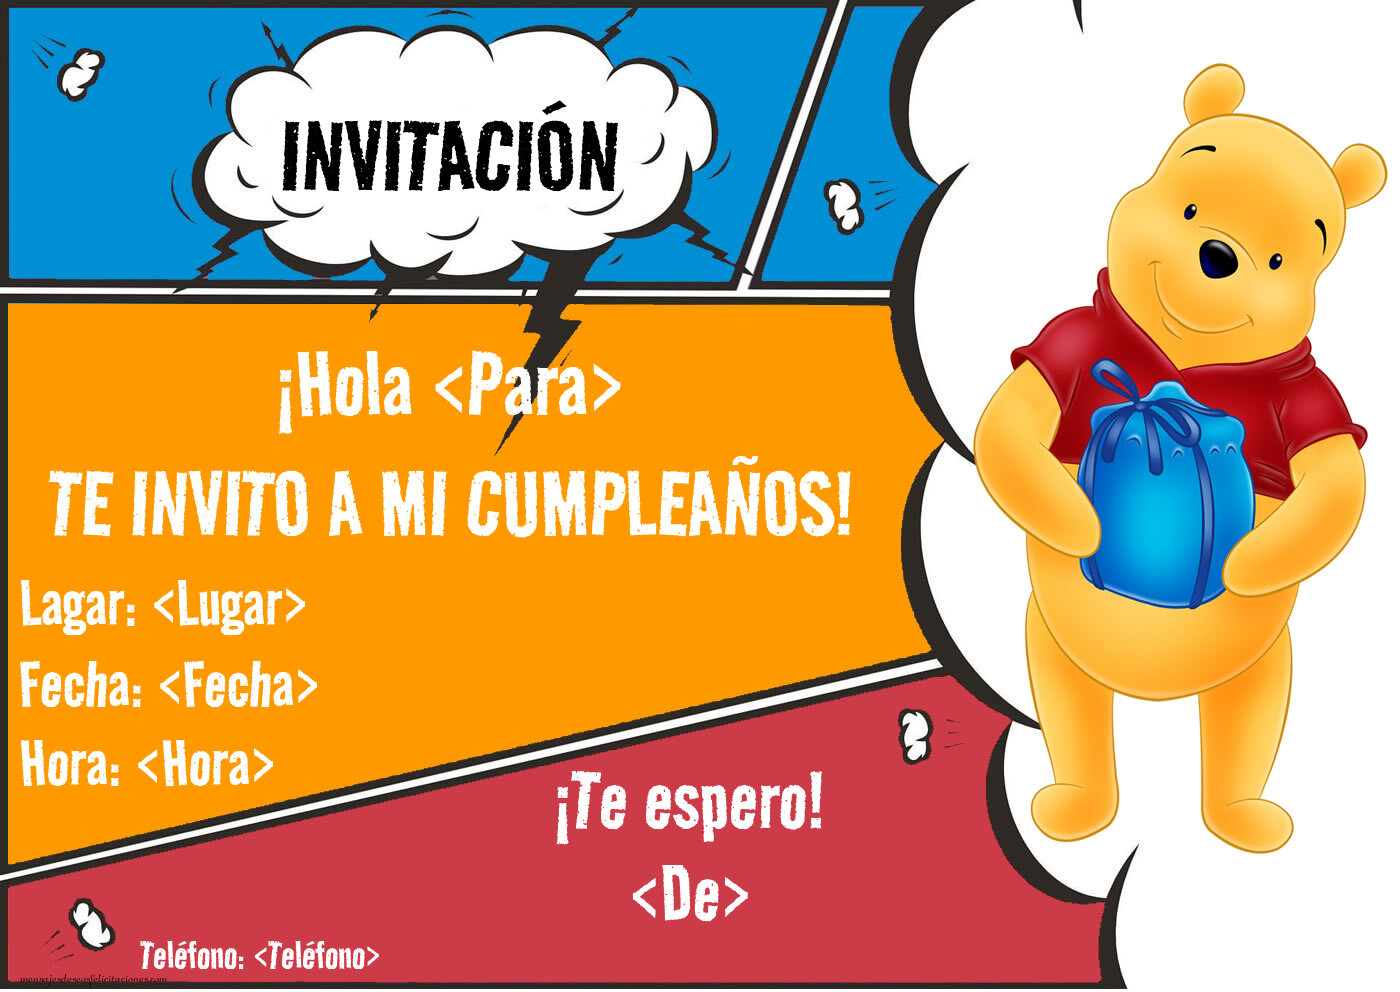 Invitacion de Winnie Pooh | Personalizar invitaciones de cumpleaños para niños